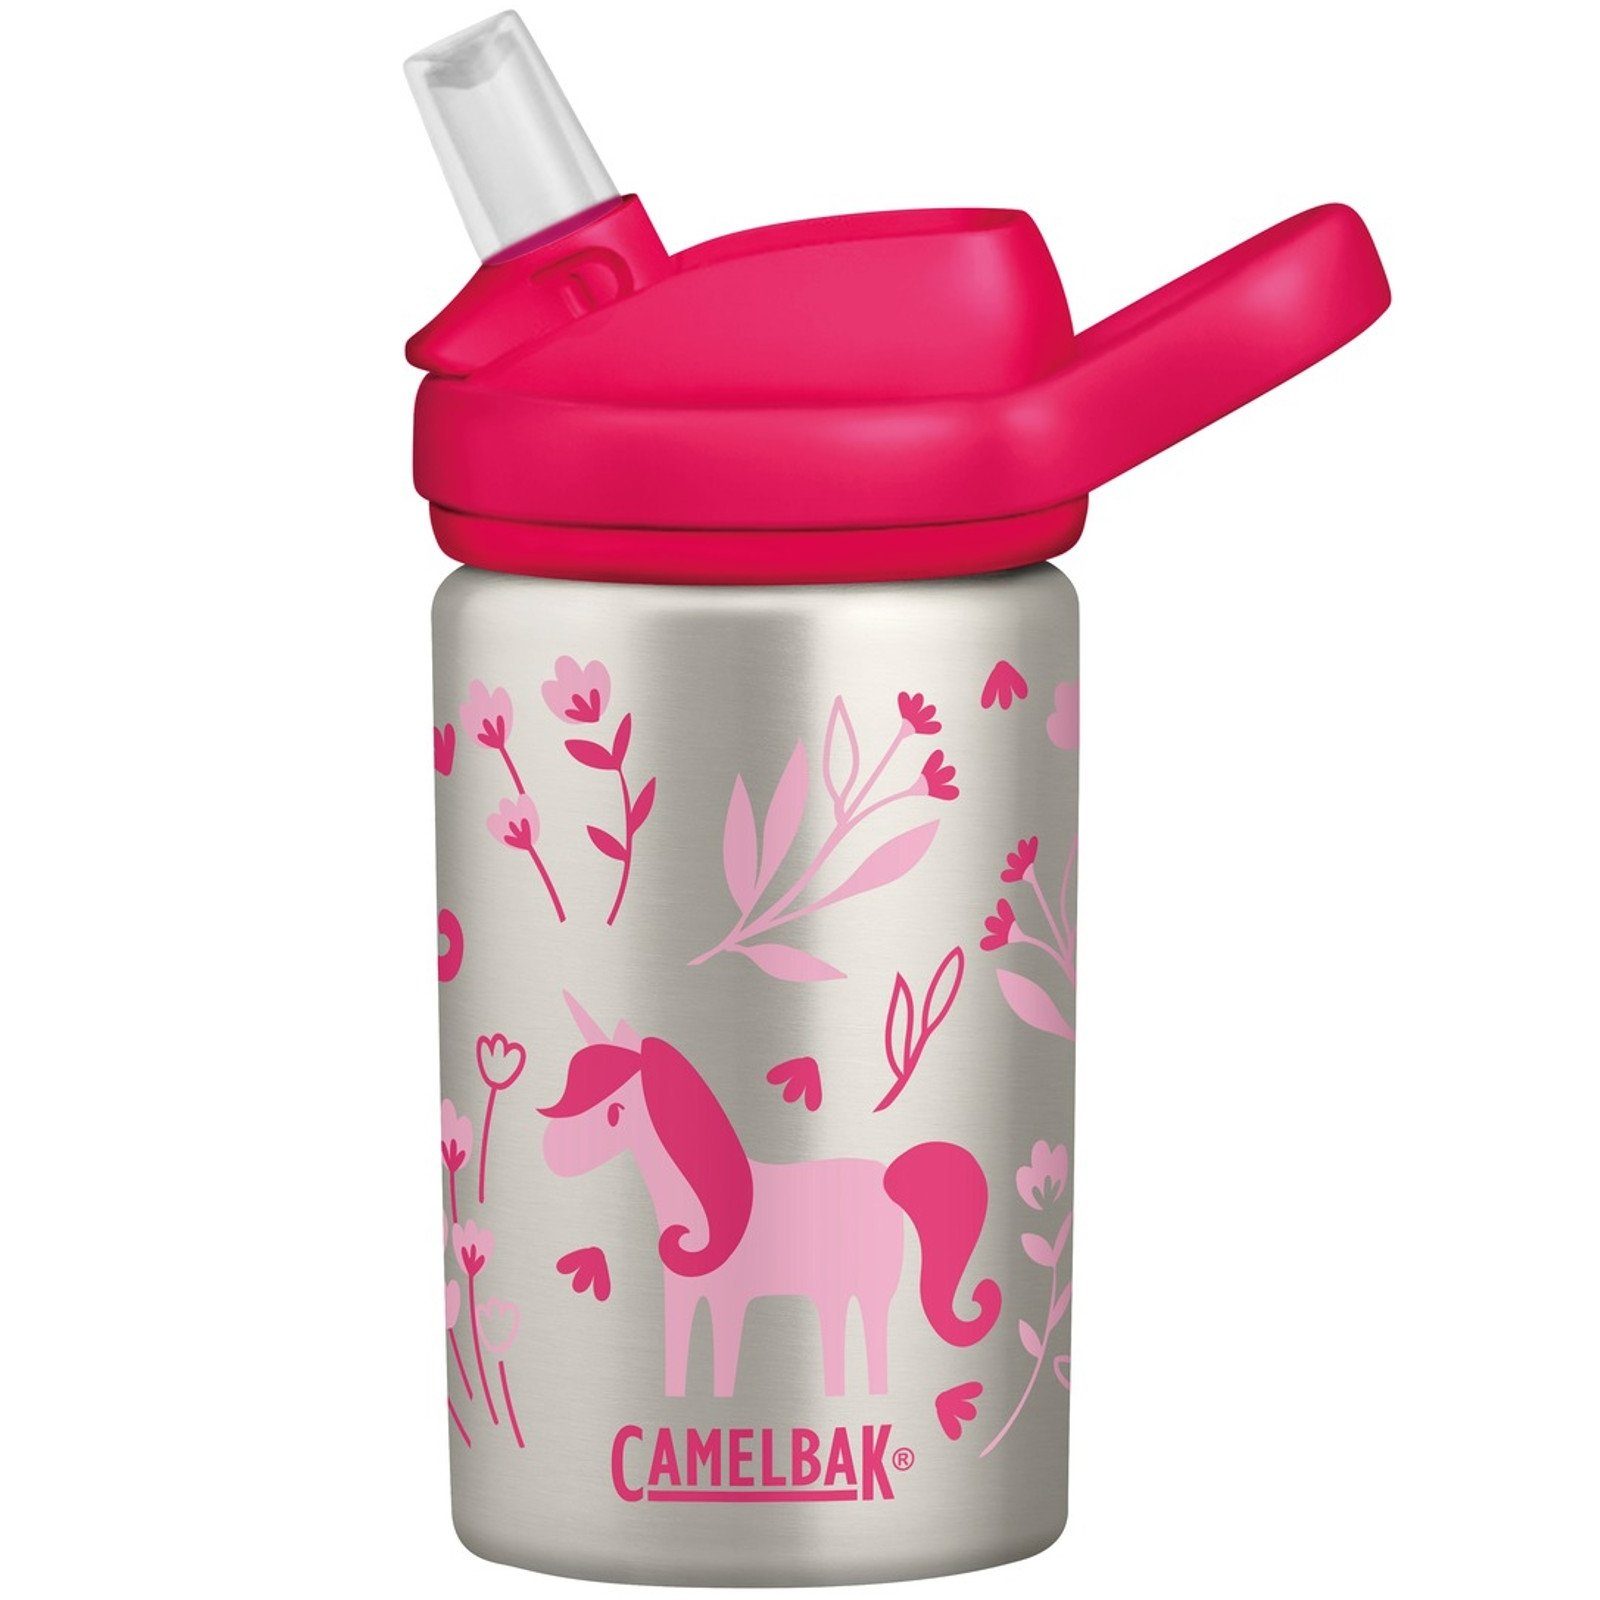 Camelbak & Einhorn - Pink Trinkflasche Blumen